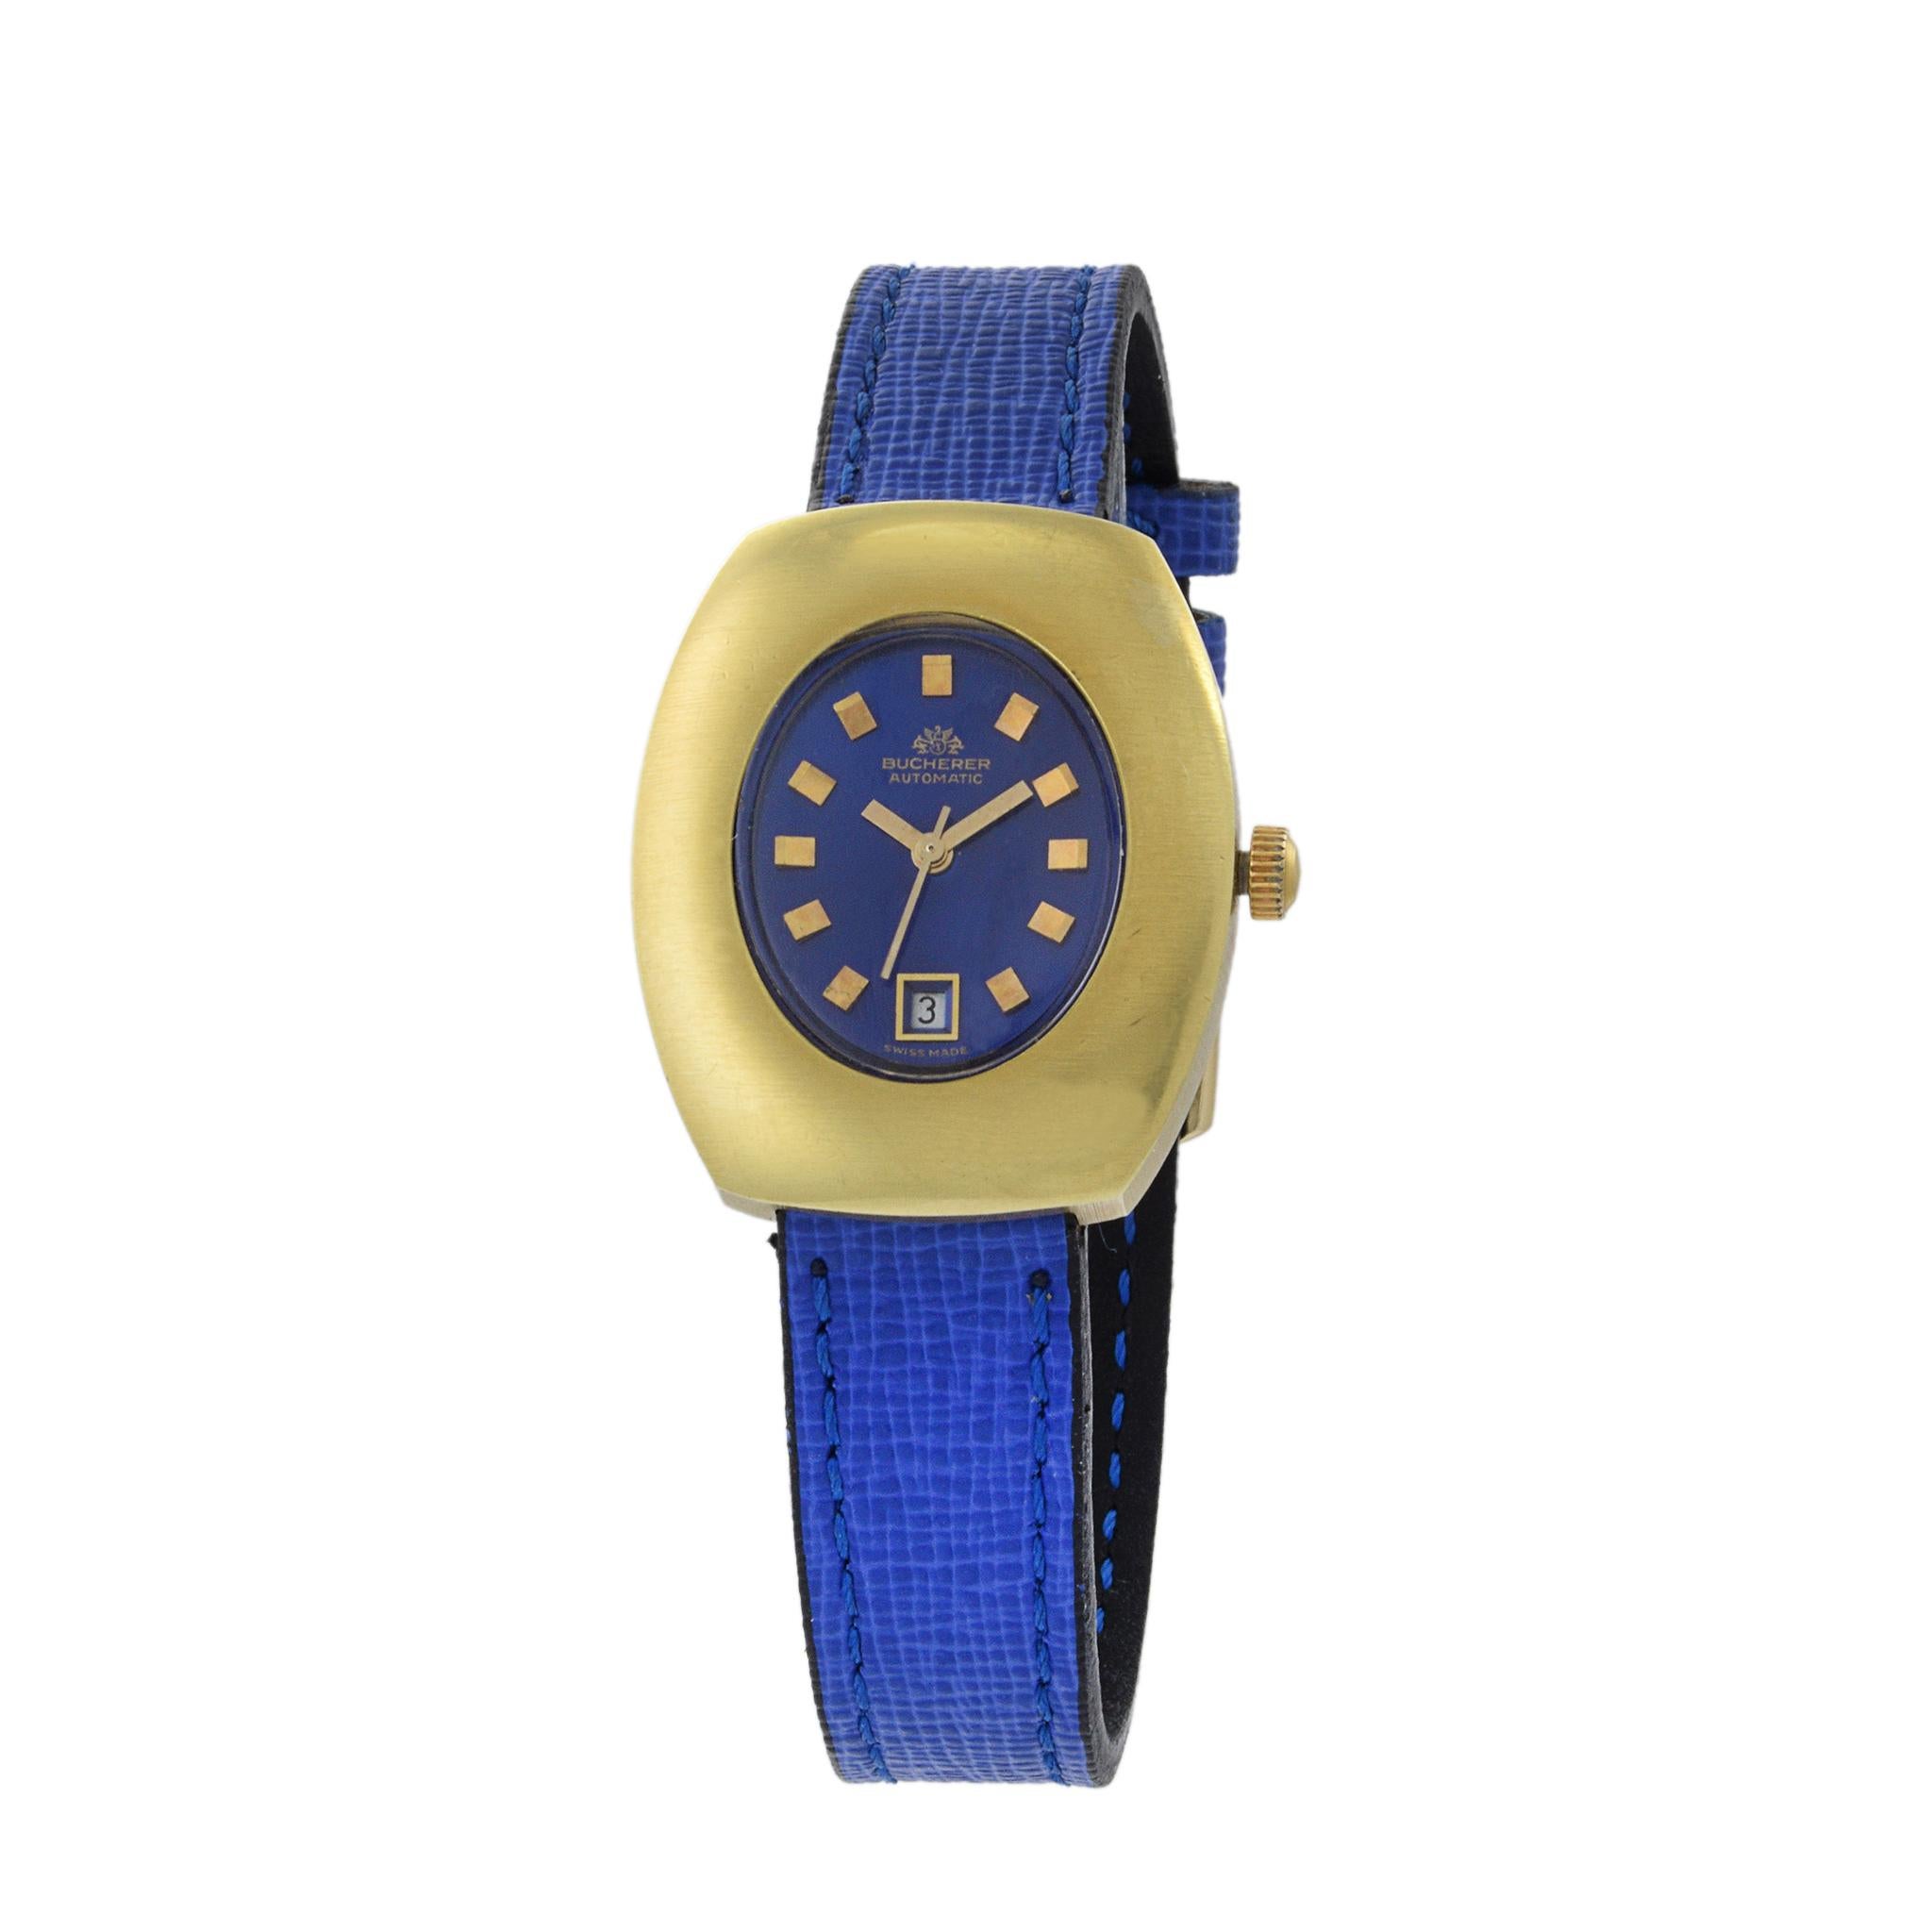 Il s'agit d'une magnifique montre Bucherer pour femme, de forme tonneau, datant des années 1960. Cette montre est animée par un mouvement ETA calibre 2551 21 rubis à quatre réglages. Ce mouvement est considéré comme l'un des meilleurs de cette